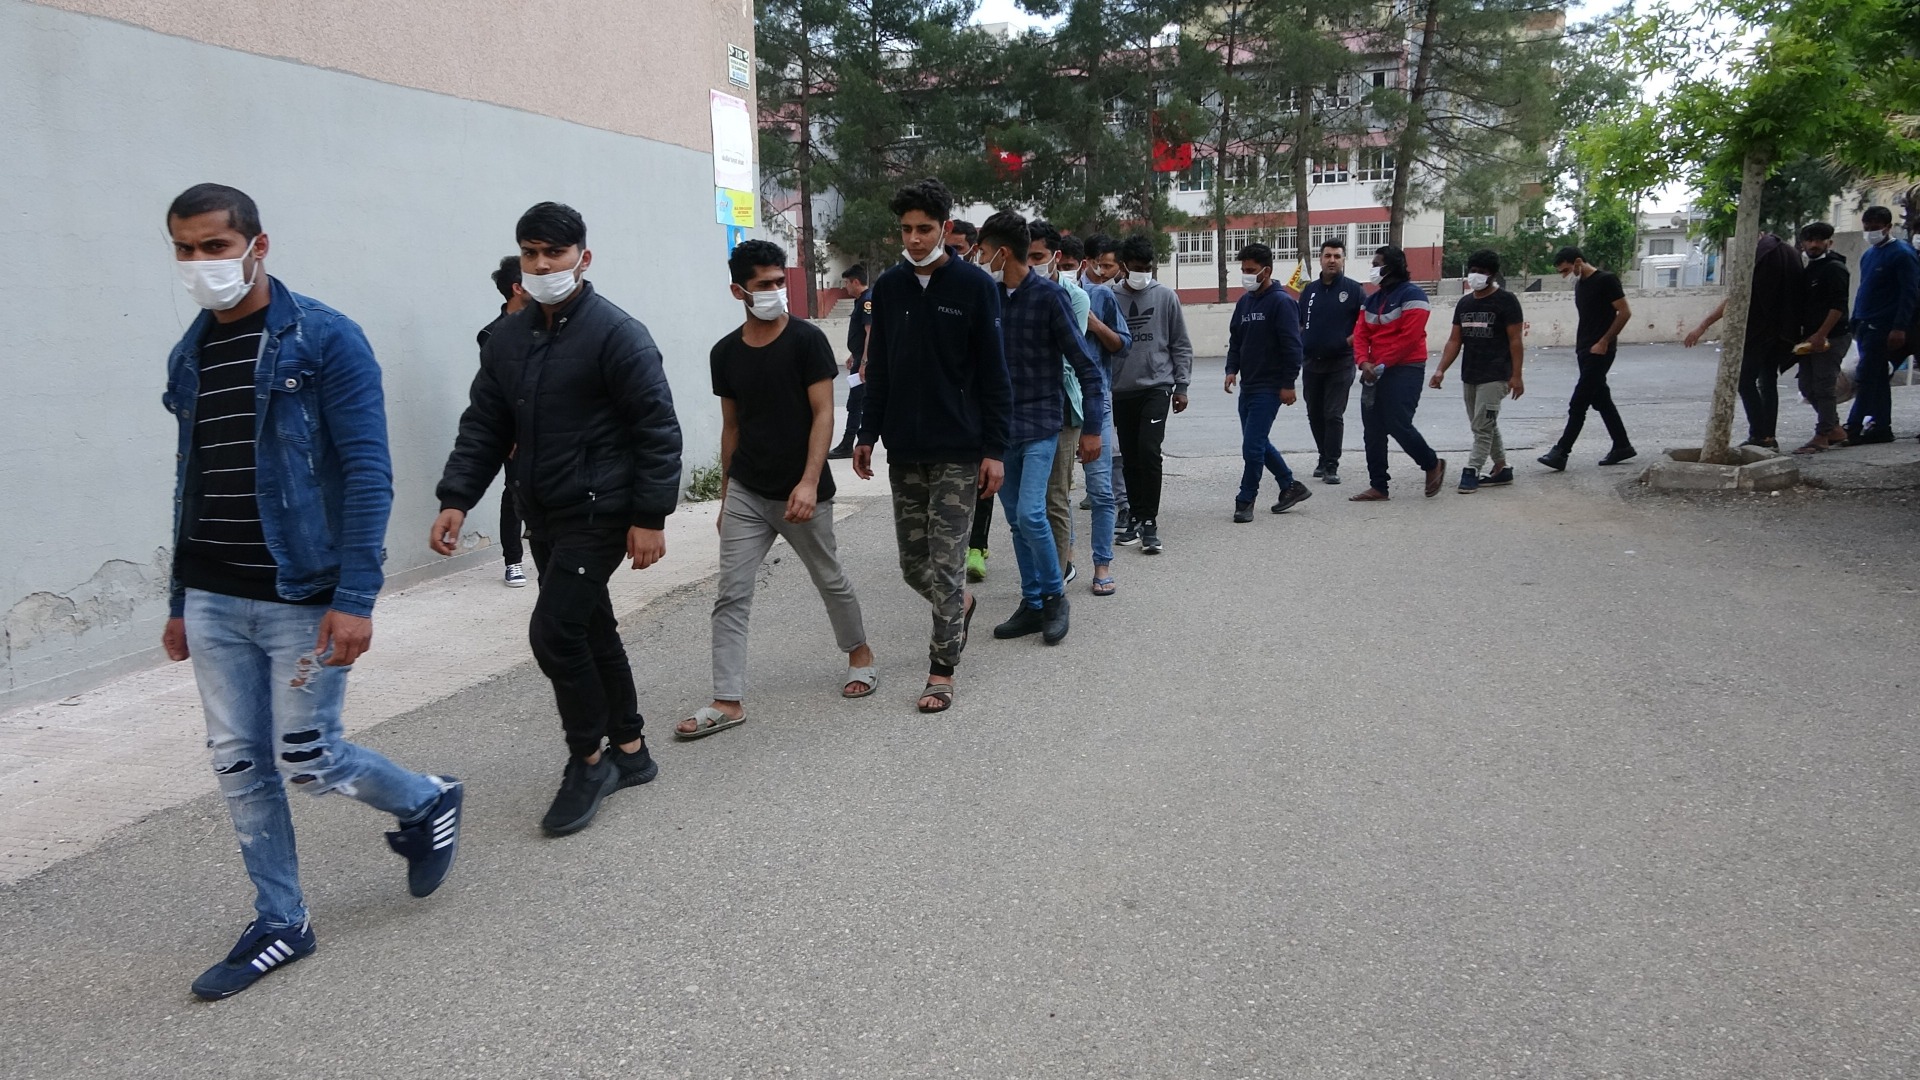 Adıyaman'da 76 kaçak göçmen yakalandı